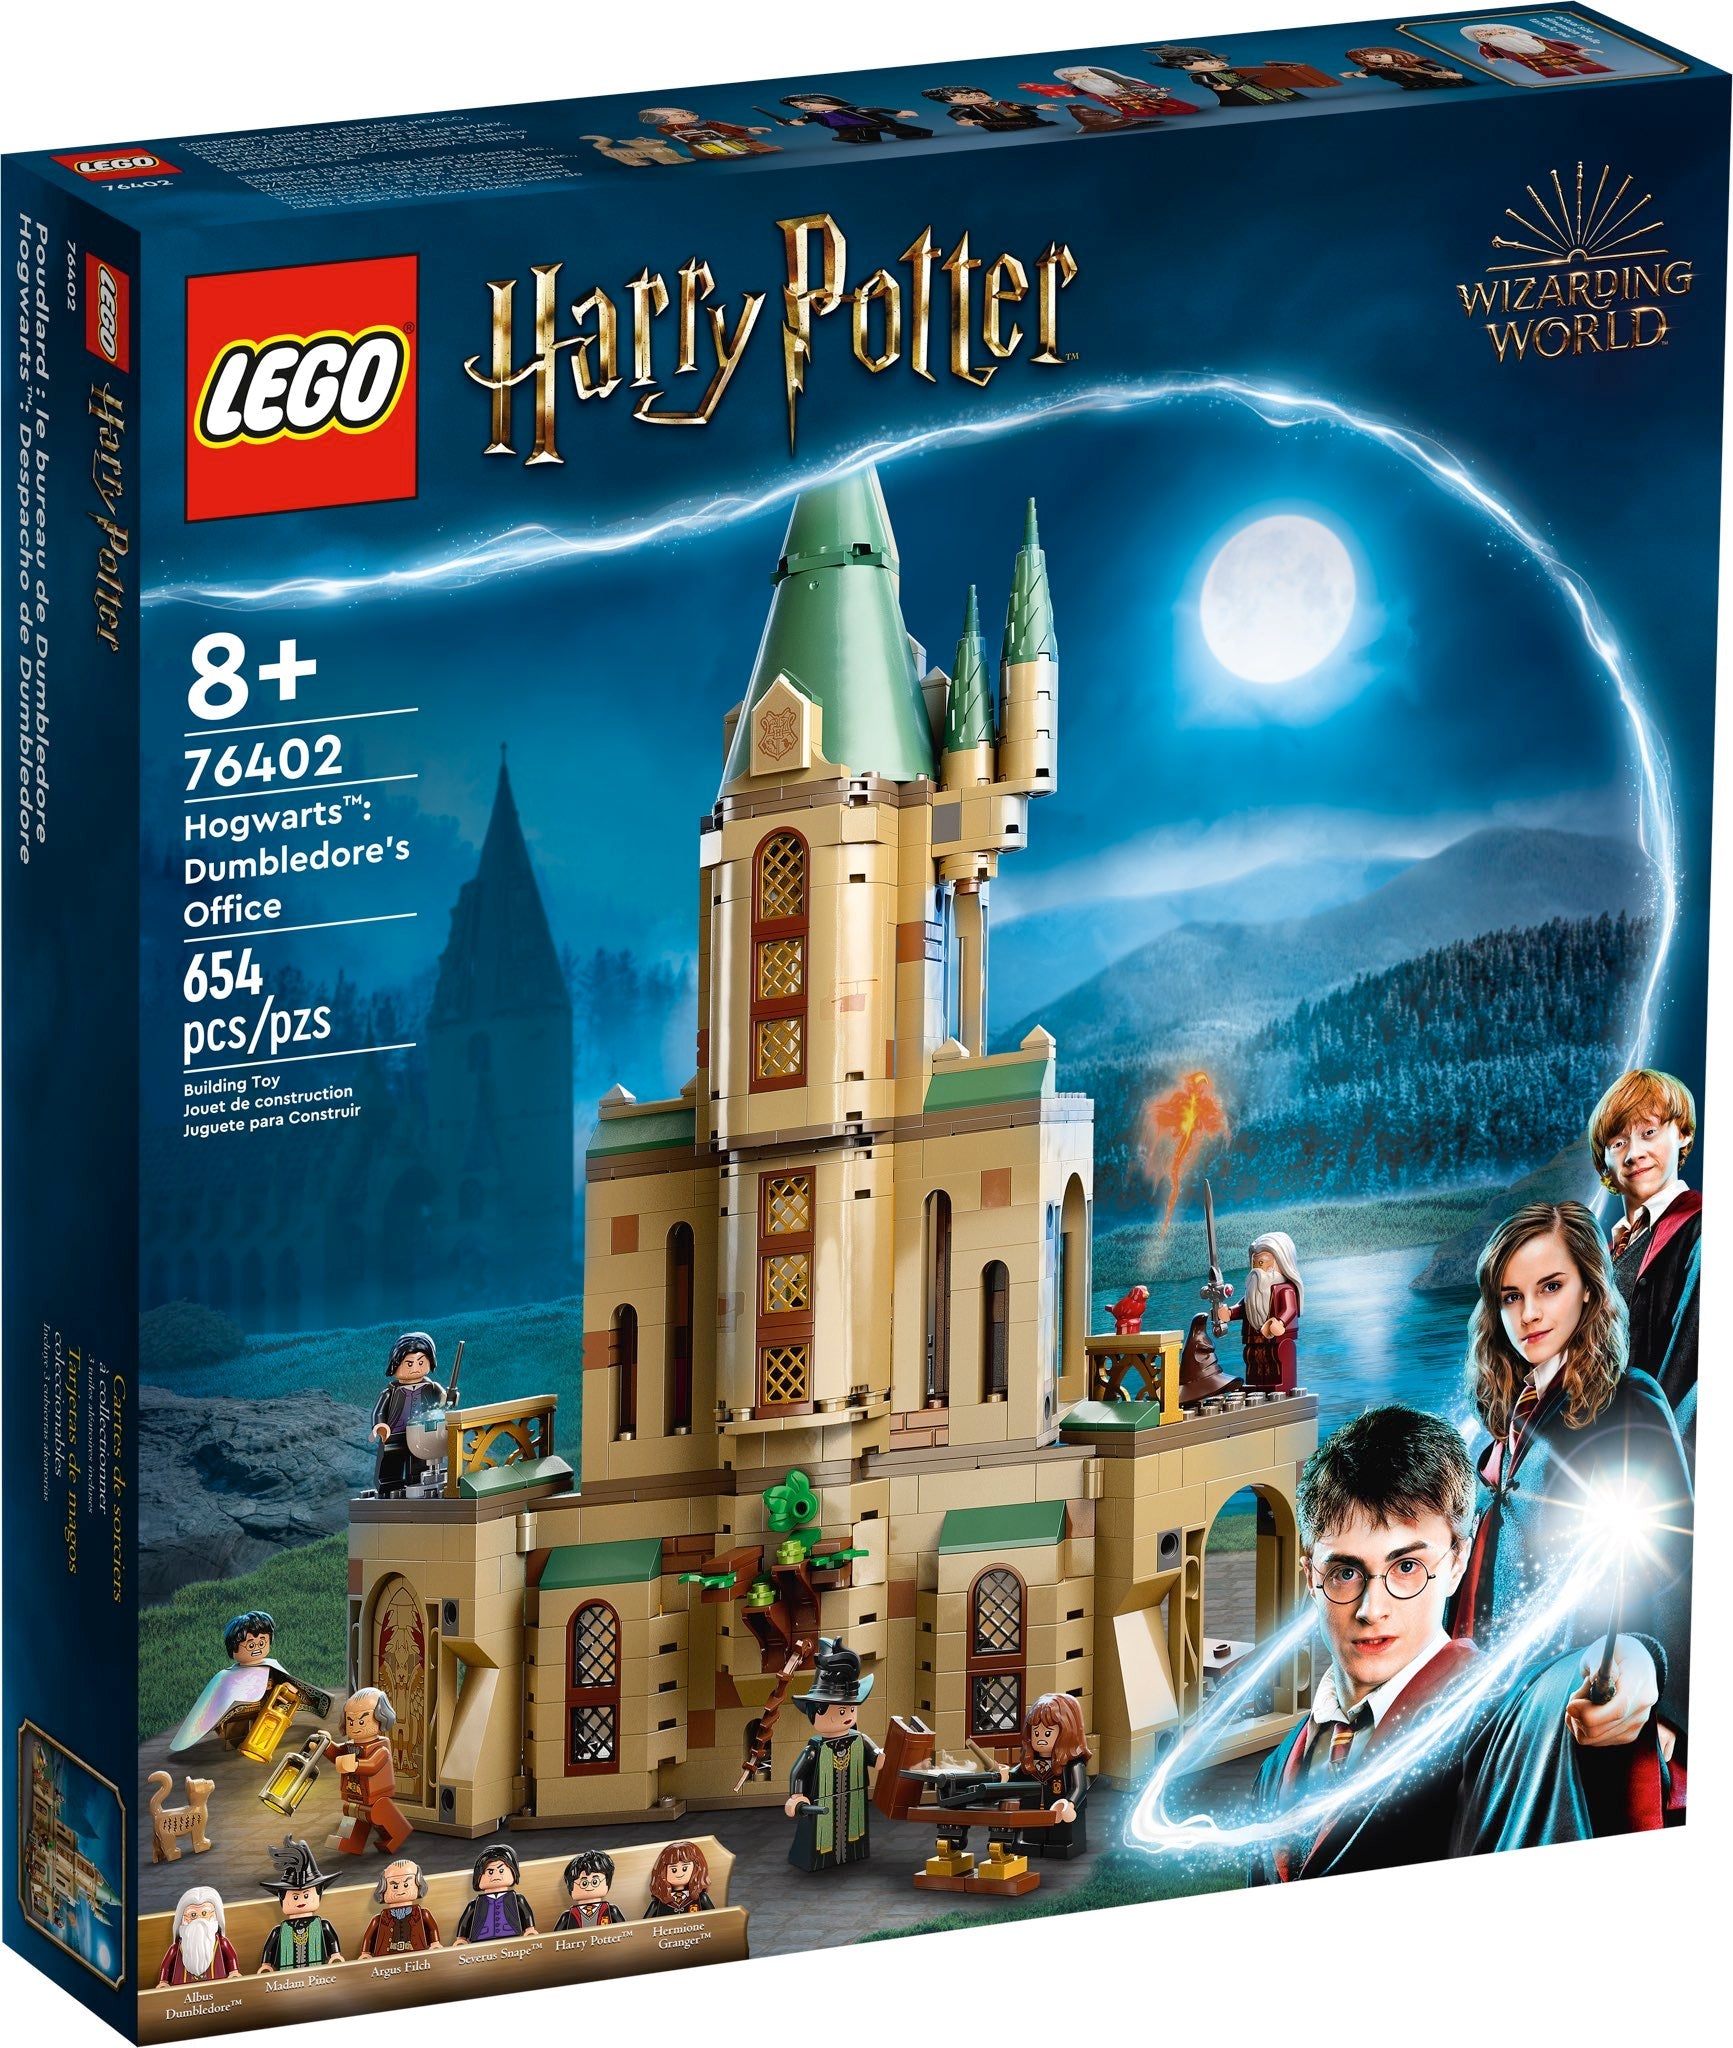 LEGO Harry Potter Hogwarts: Dumbledores Büro (76402) - im GOLDSTIEN.SHOP verfügbar mit Gratisversand ab Schweizer Lager! (5702017153438)